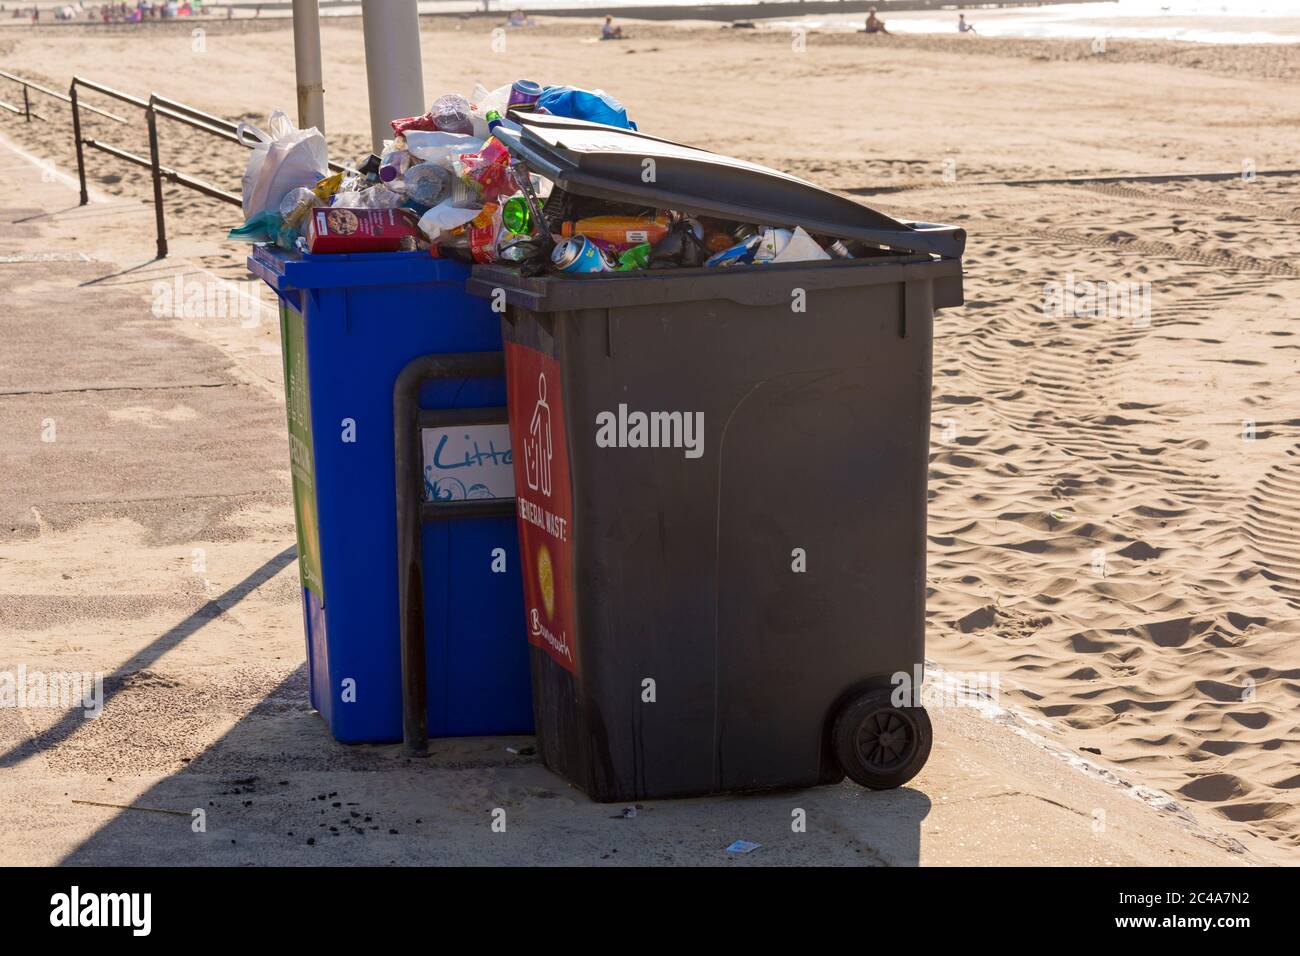 Les ordures laissées sur le plus chaud jour de l'année pendant la vague de chaleur à la plage de Bournemouth, Dorset Royaume-Uni en juin - déchets de litière Banque D'Images